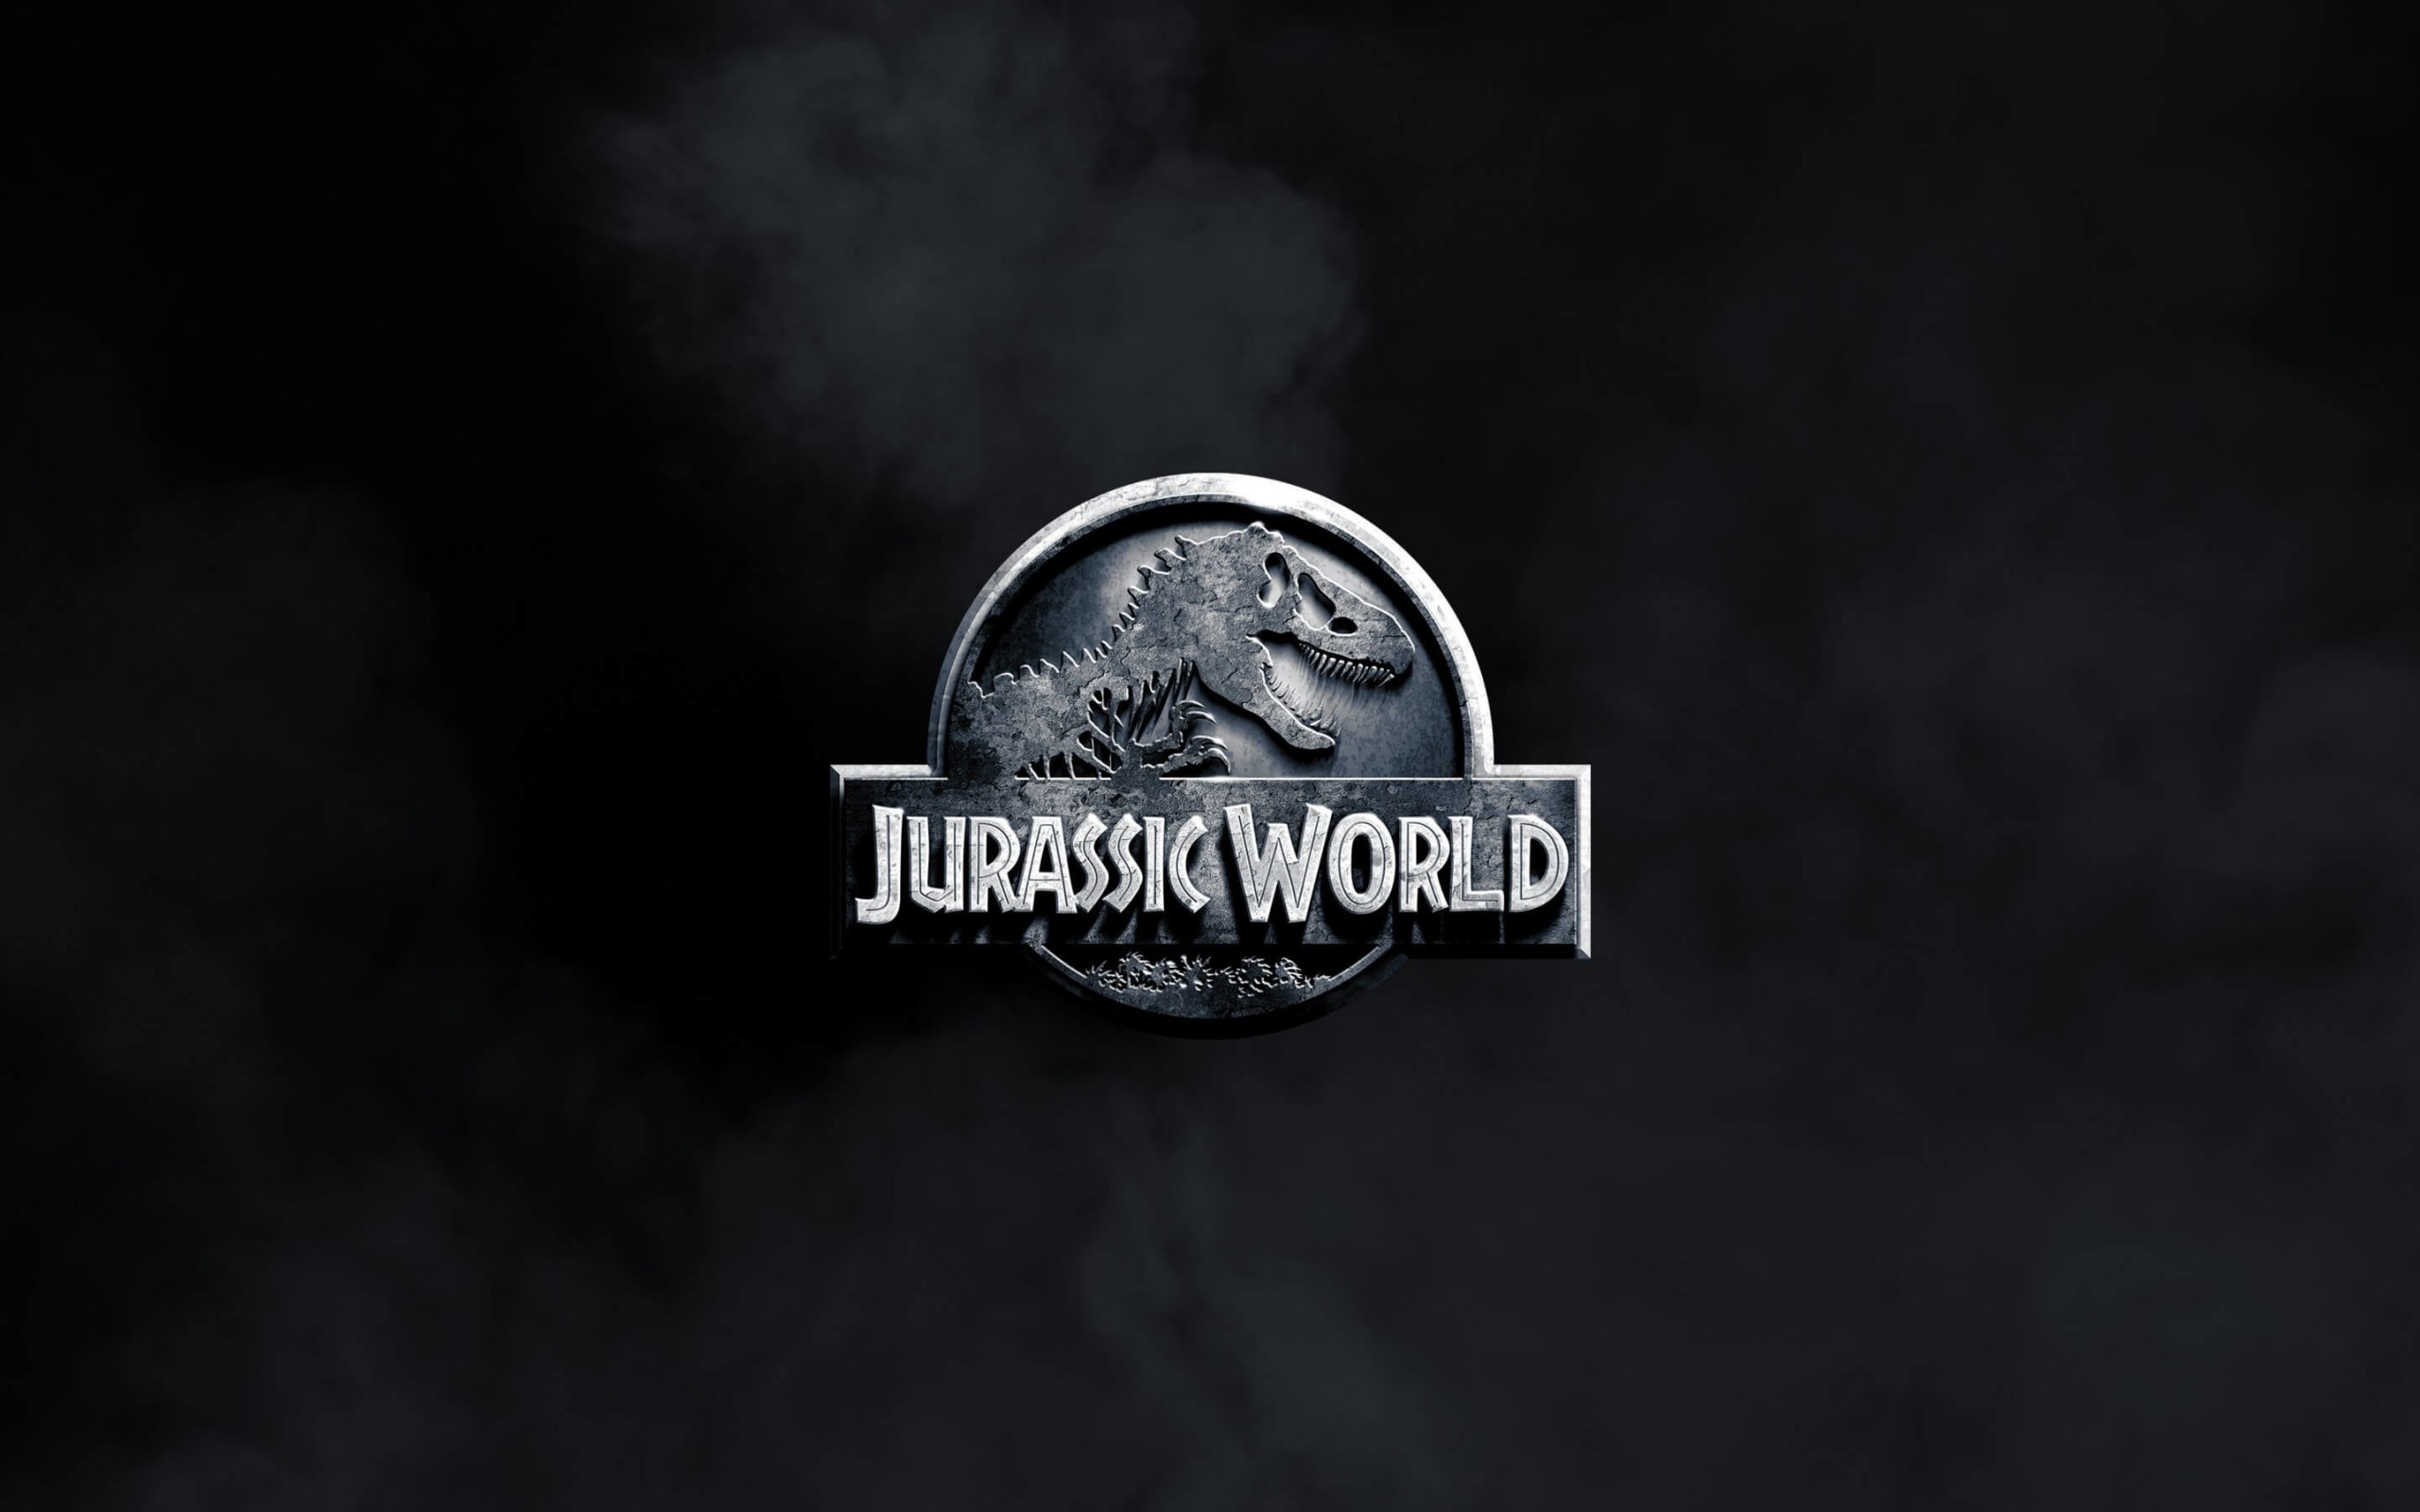 Jurassic World Wallpaper for Desktop 2560x1600